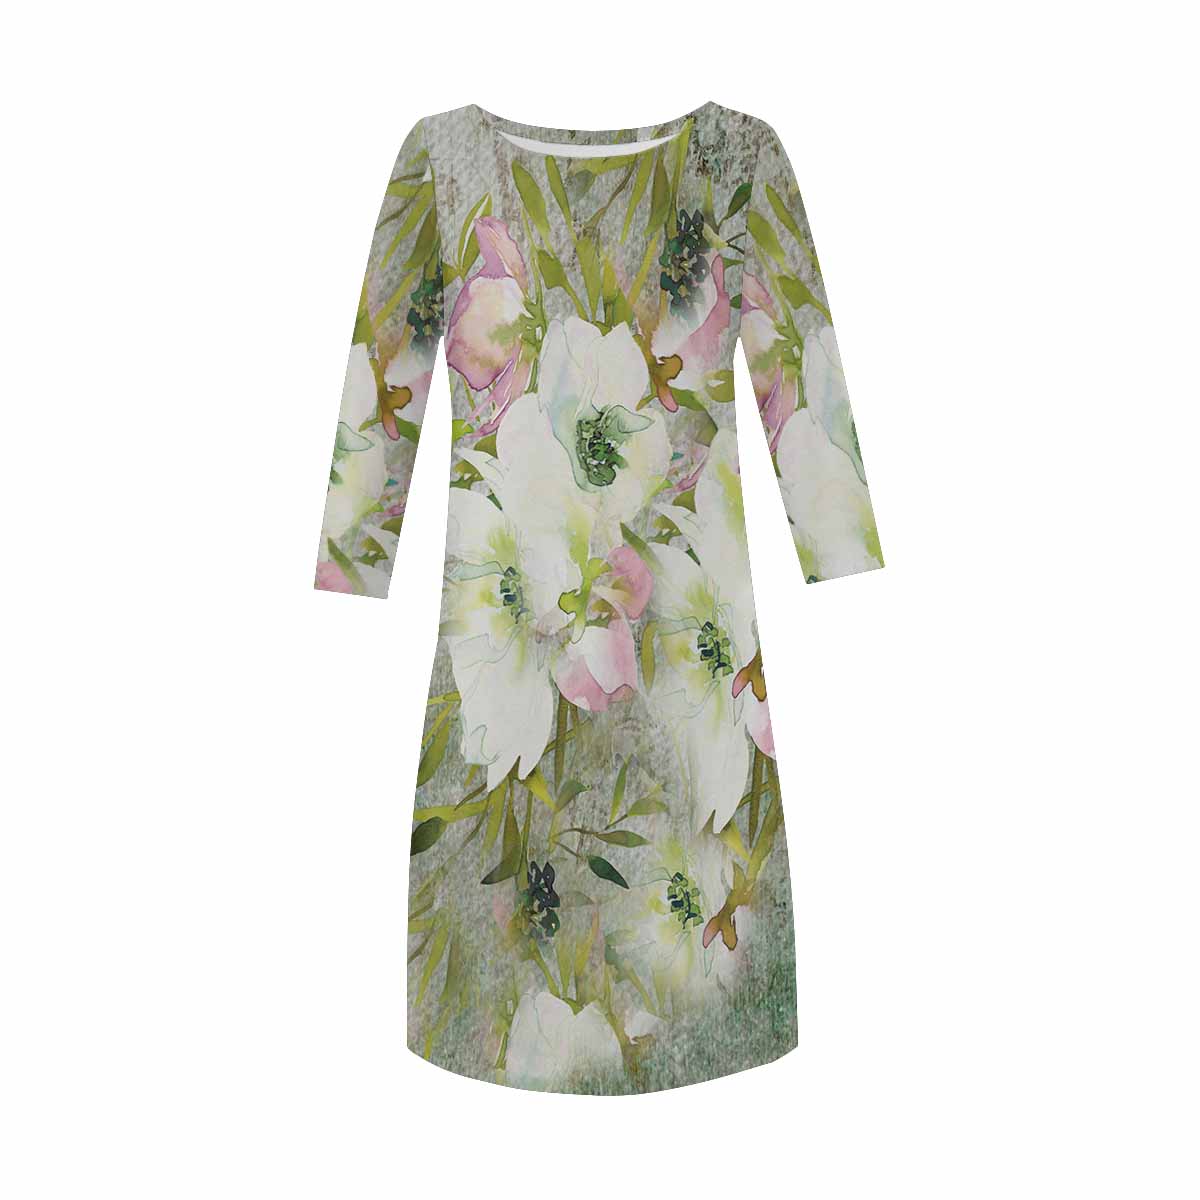 Vintage floral loose dress, XS to 3X plus size, model D29532 Design 03